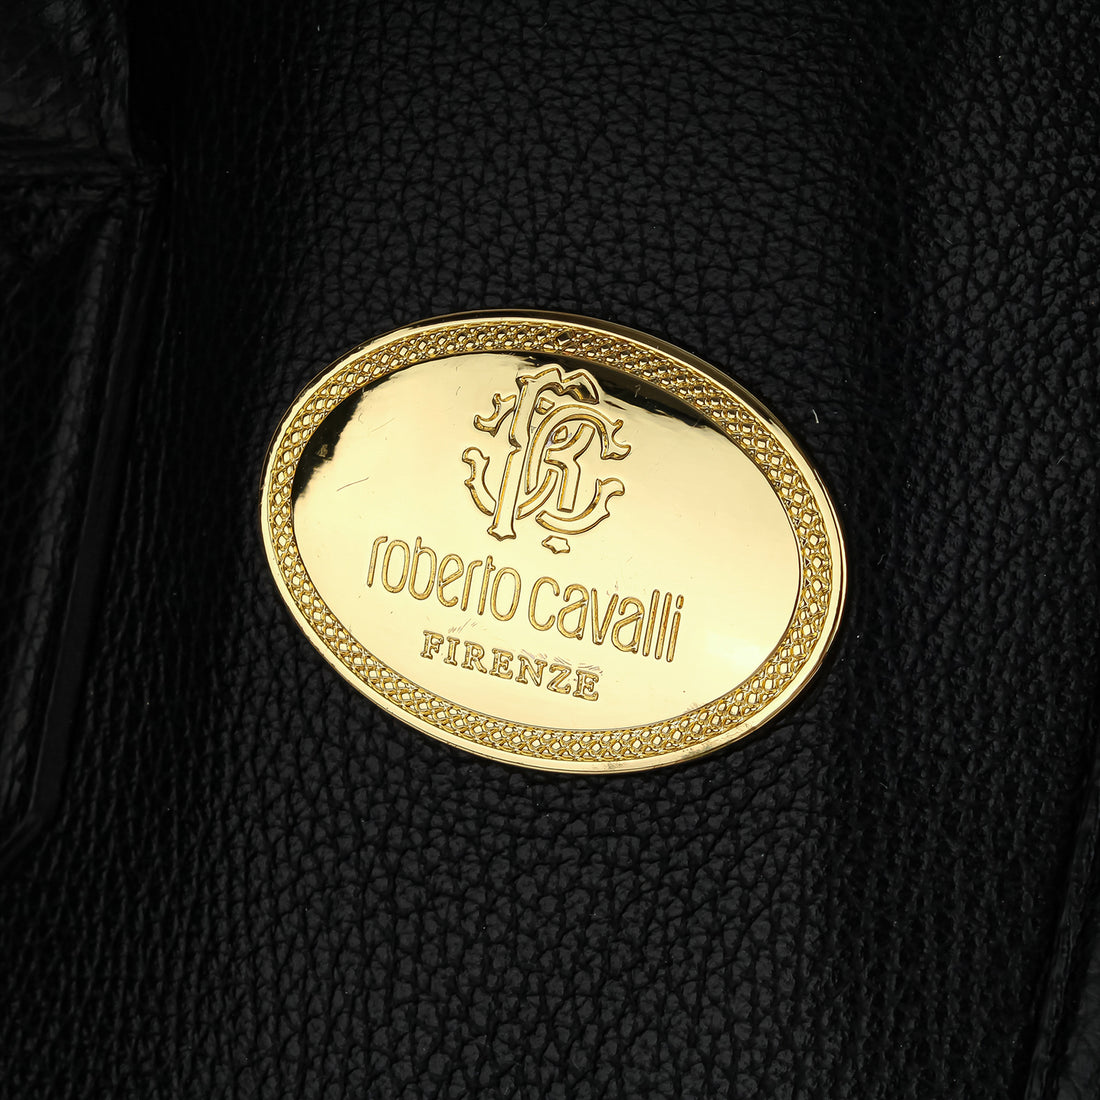 ROBERTO CAVALLI Handbag - Black Leather & Suede